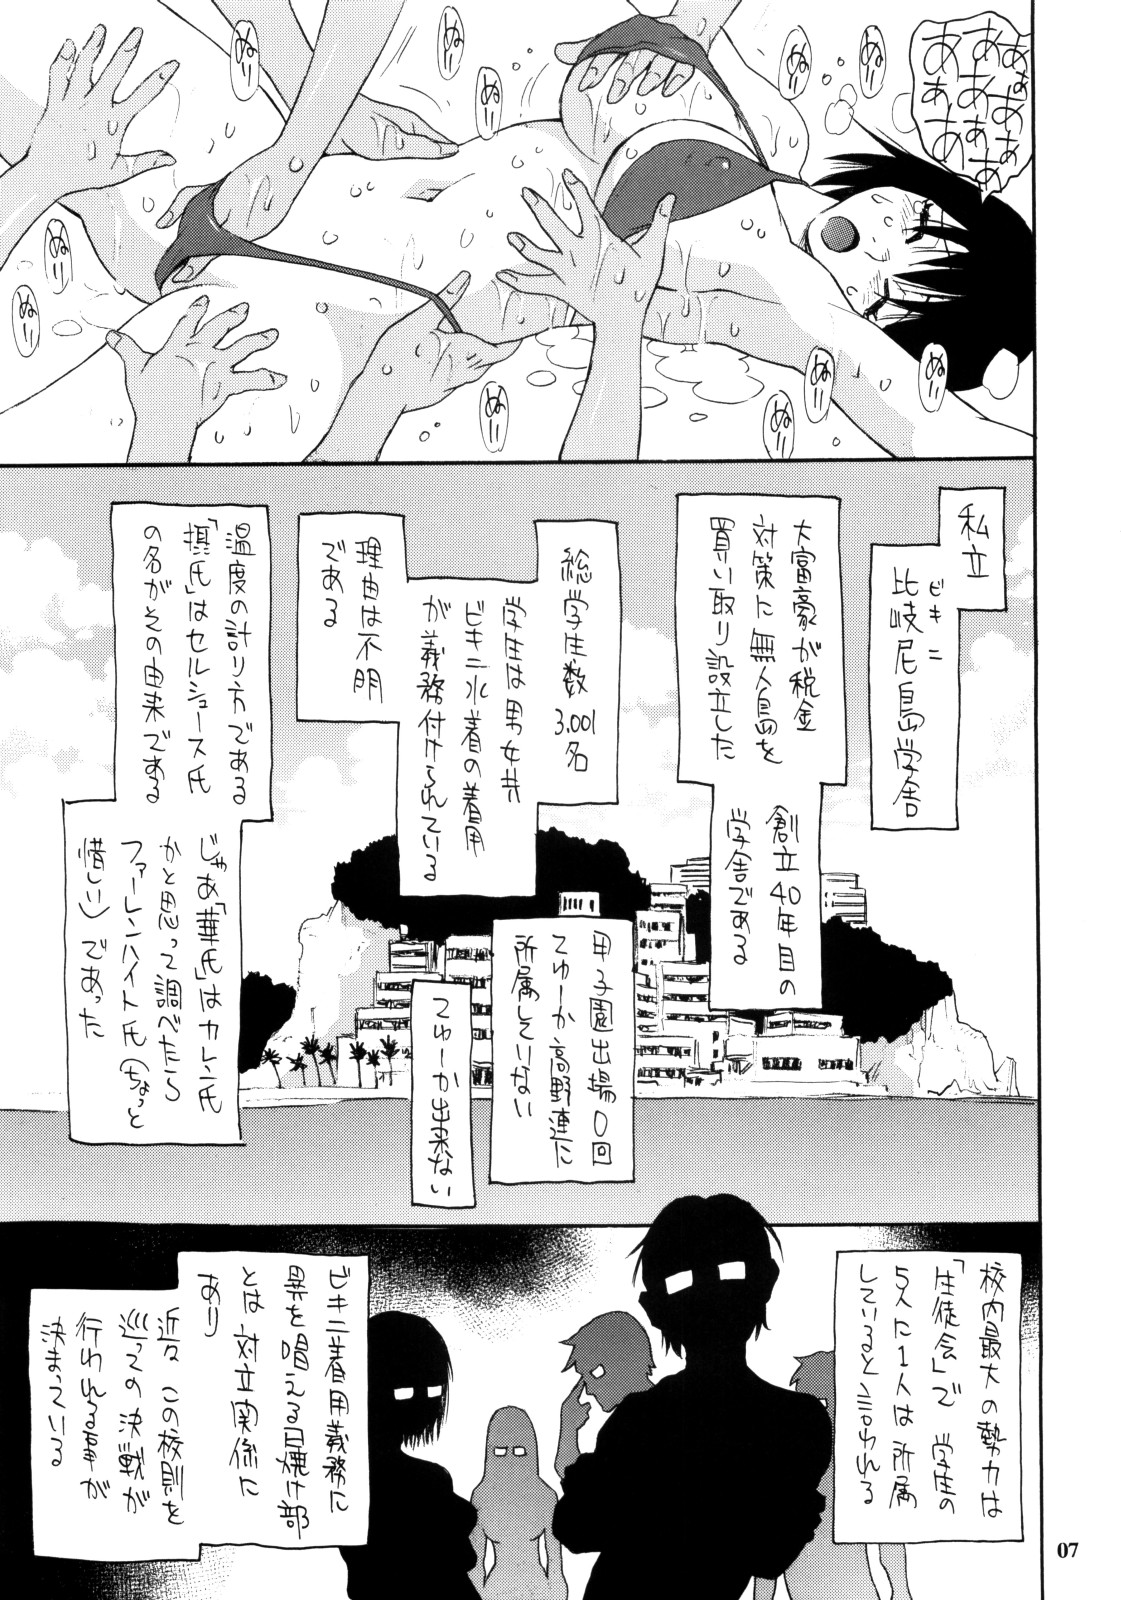 (C74) [NOUZUI MAJUTSU, NO-NO'S (Kawara Keisuke, Kanesada Keishi, NEO'GENTLE)] Let's Bikiniing! page 7 full